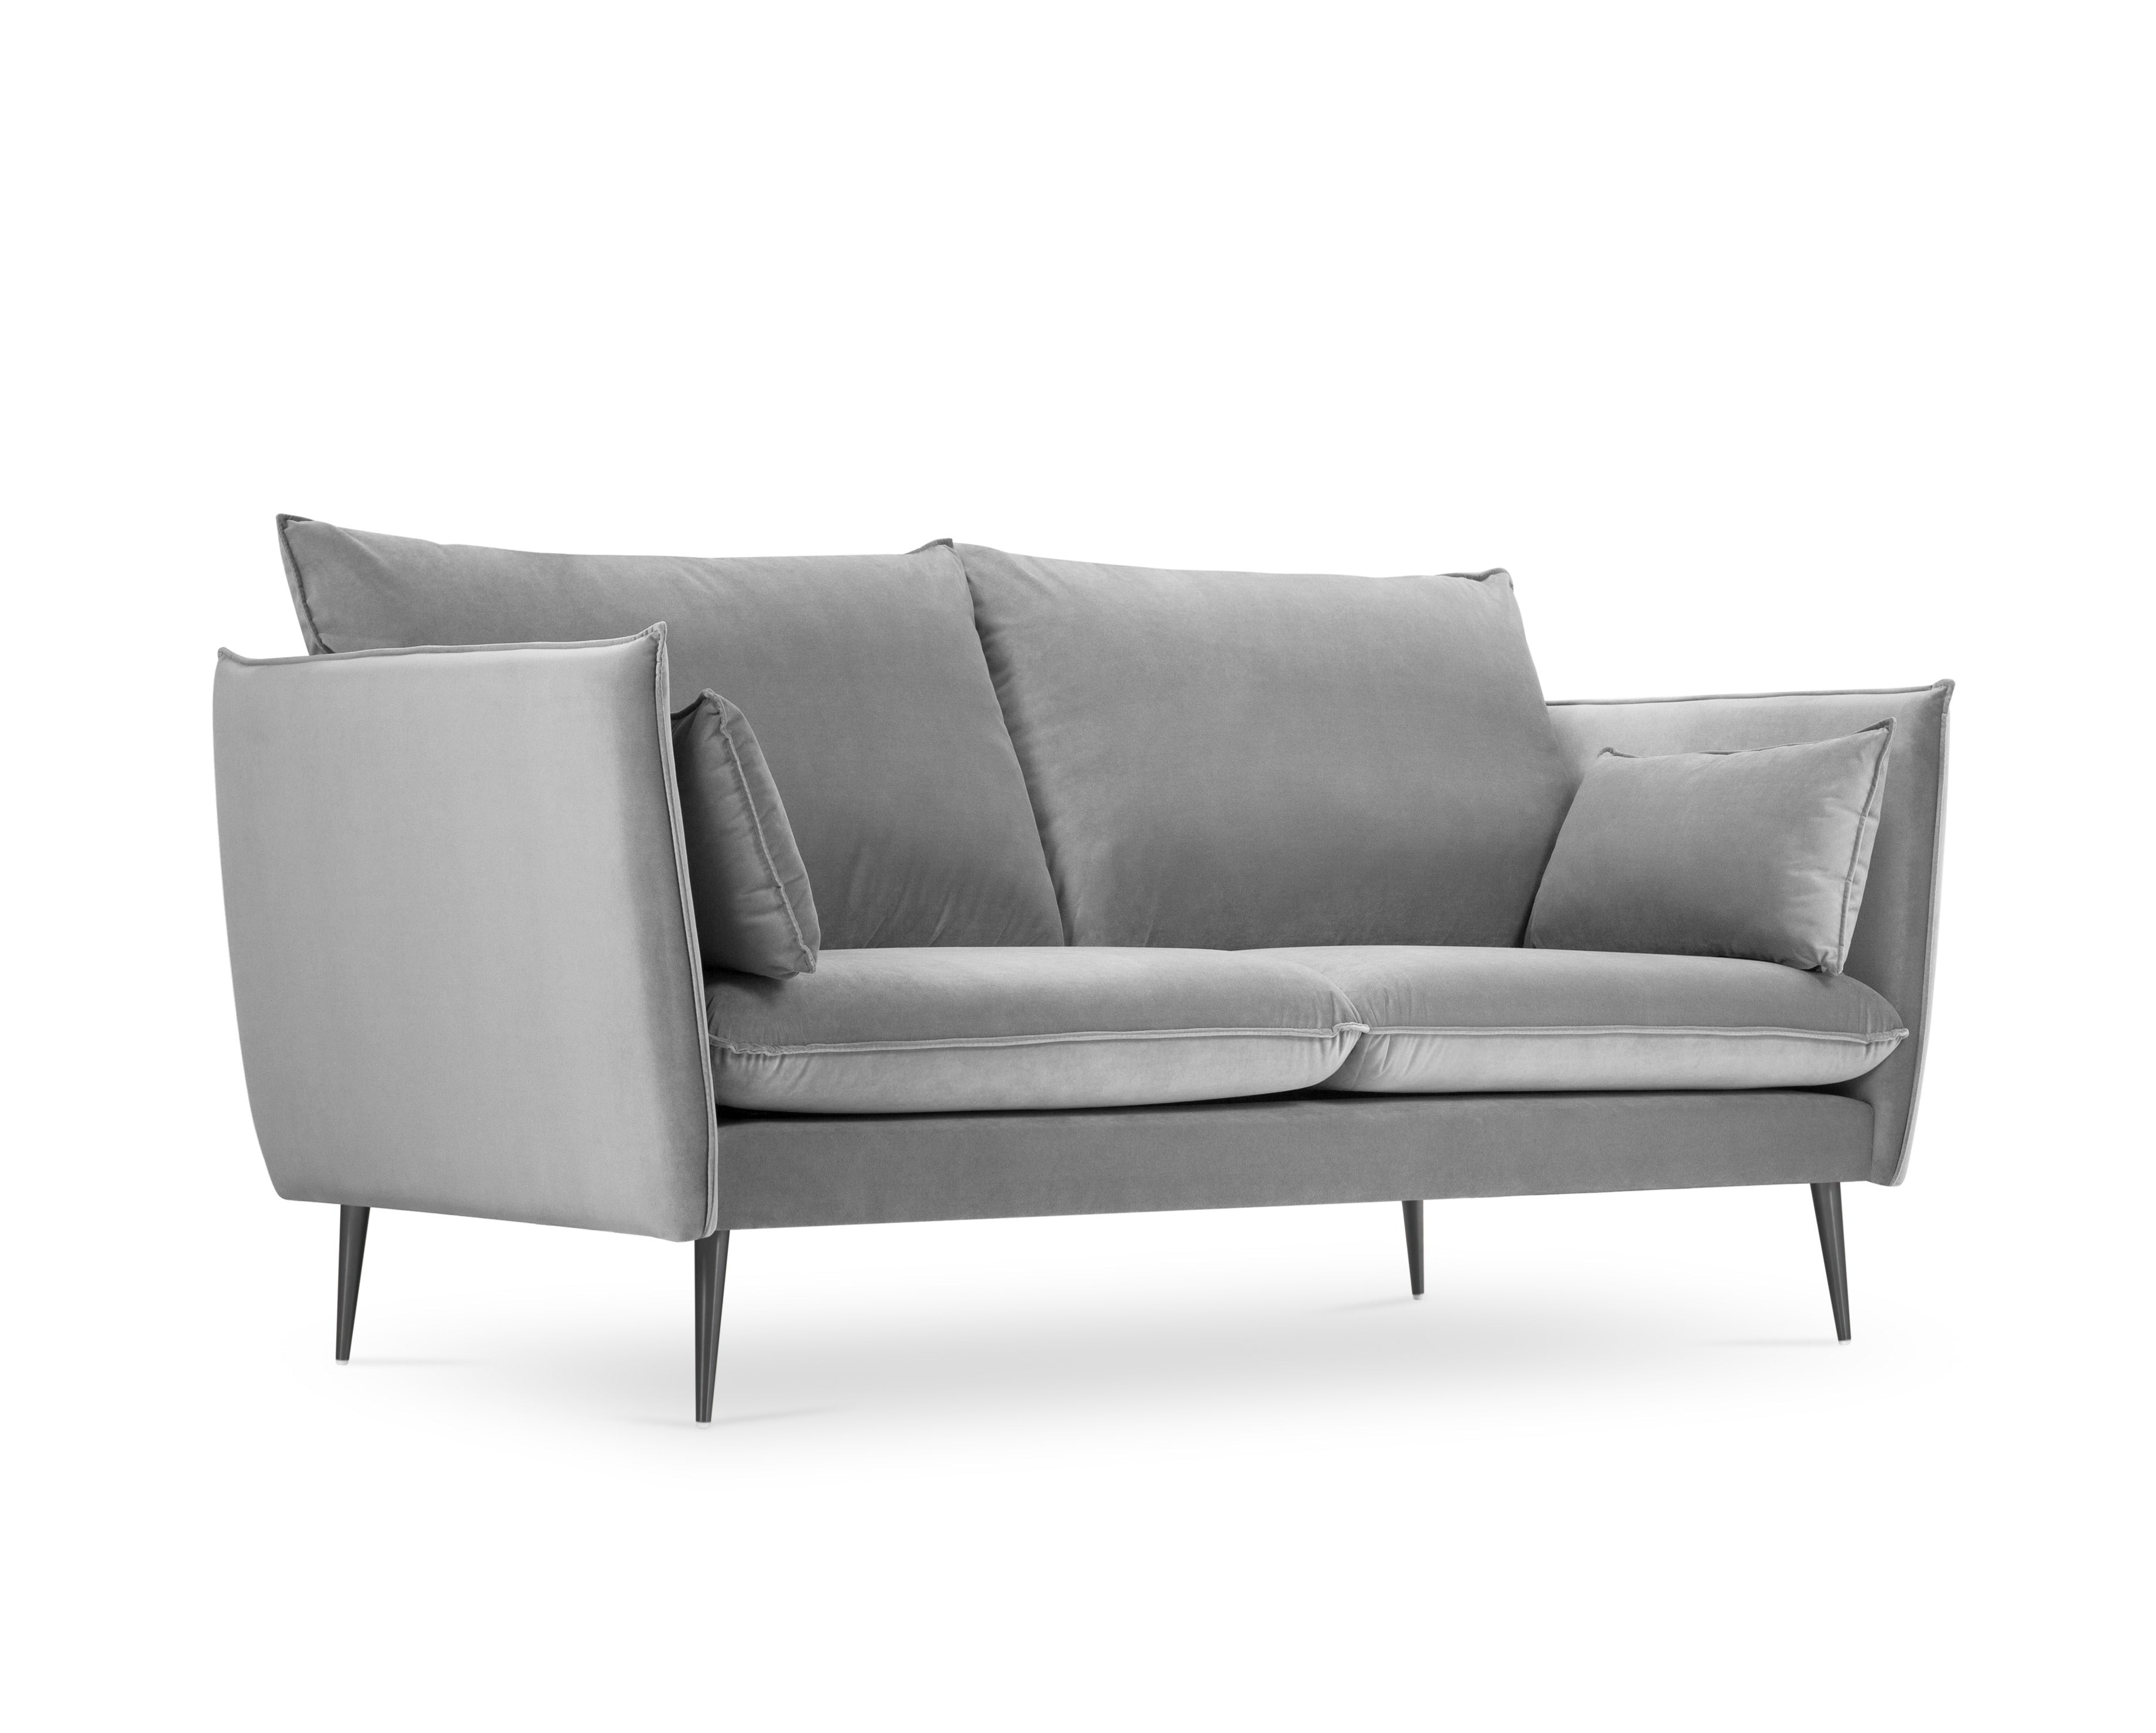 2-person sofa light gray